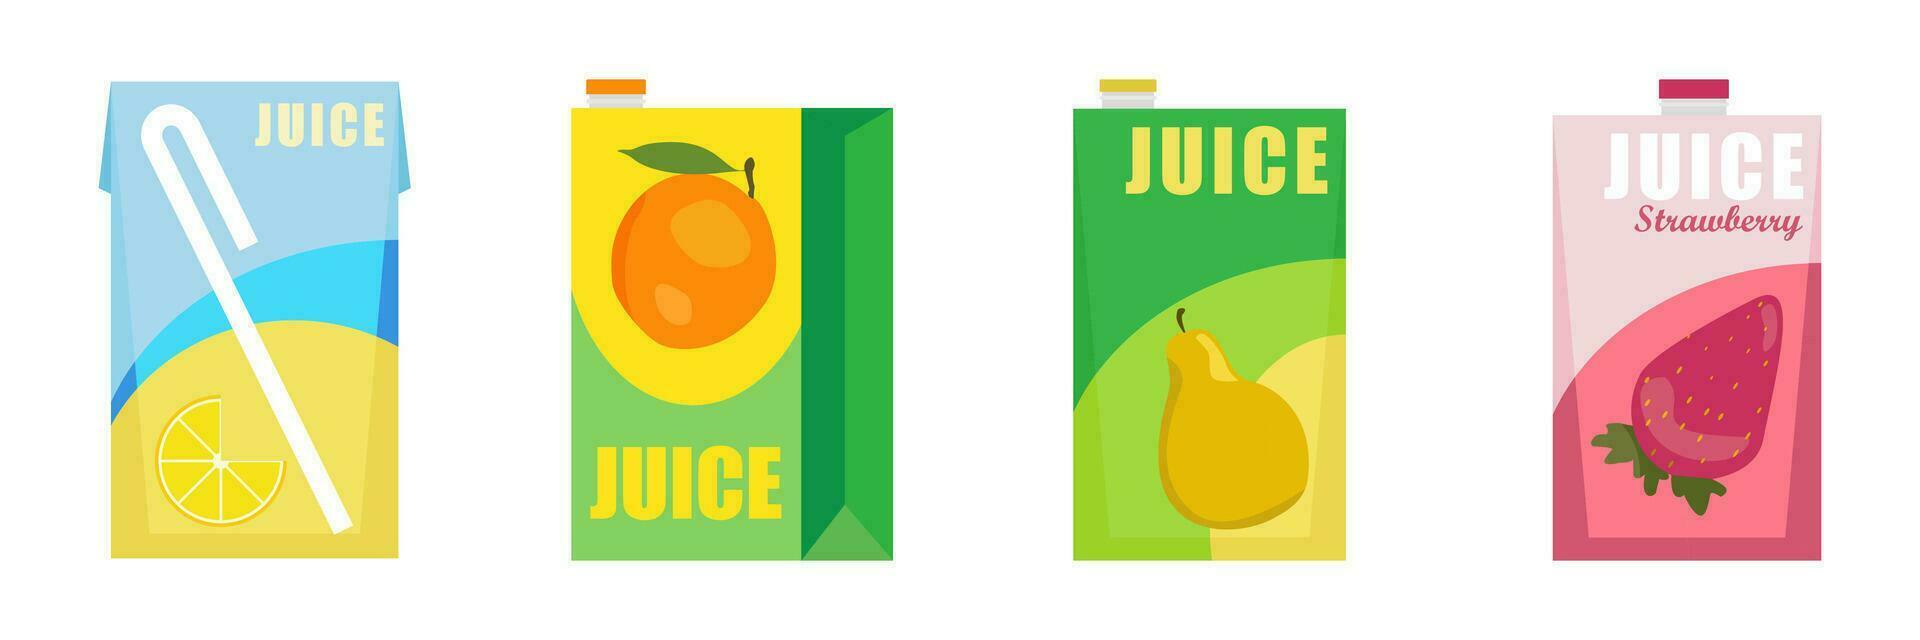 réaliste maquette de pack et boîte de Orange jus. ensemble de papier carton des boites et emballage pour Orange jus et boissons, vue de différent côtés. isolé réaliste vecteur illustration.